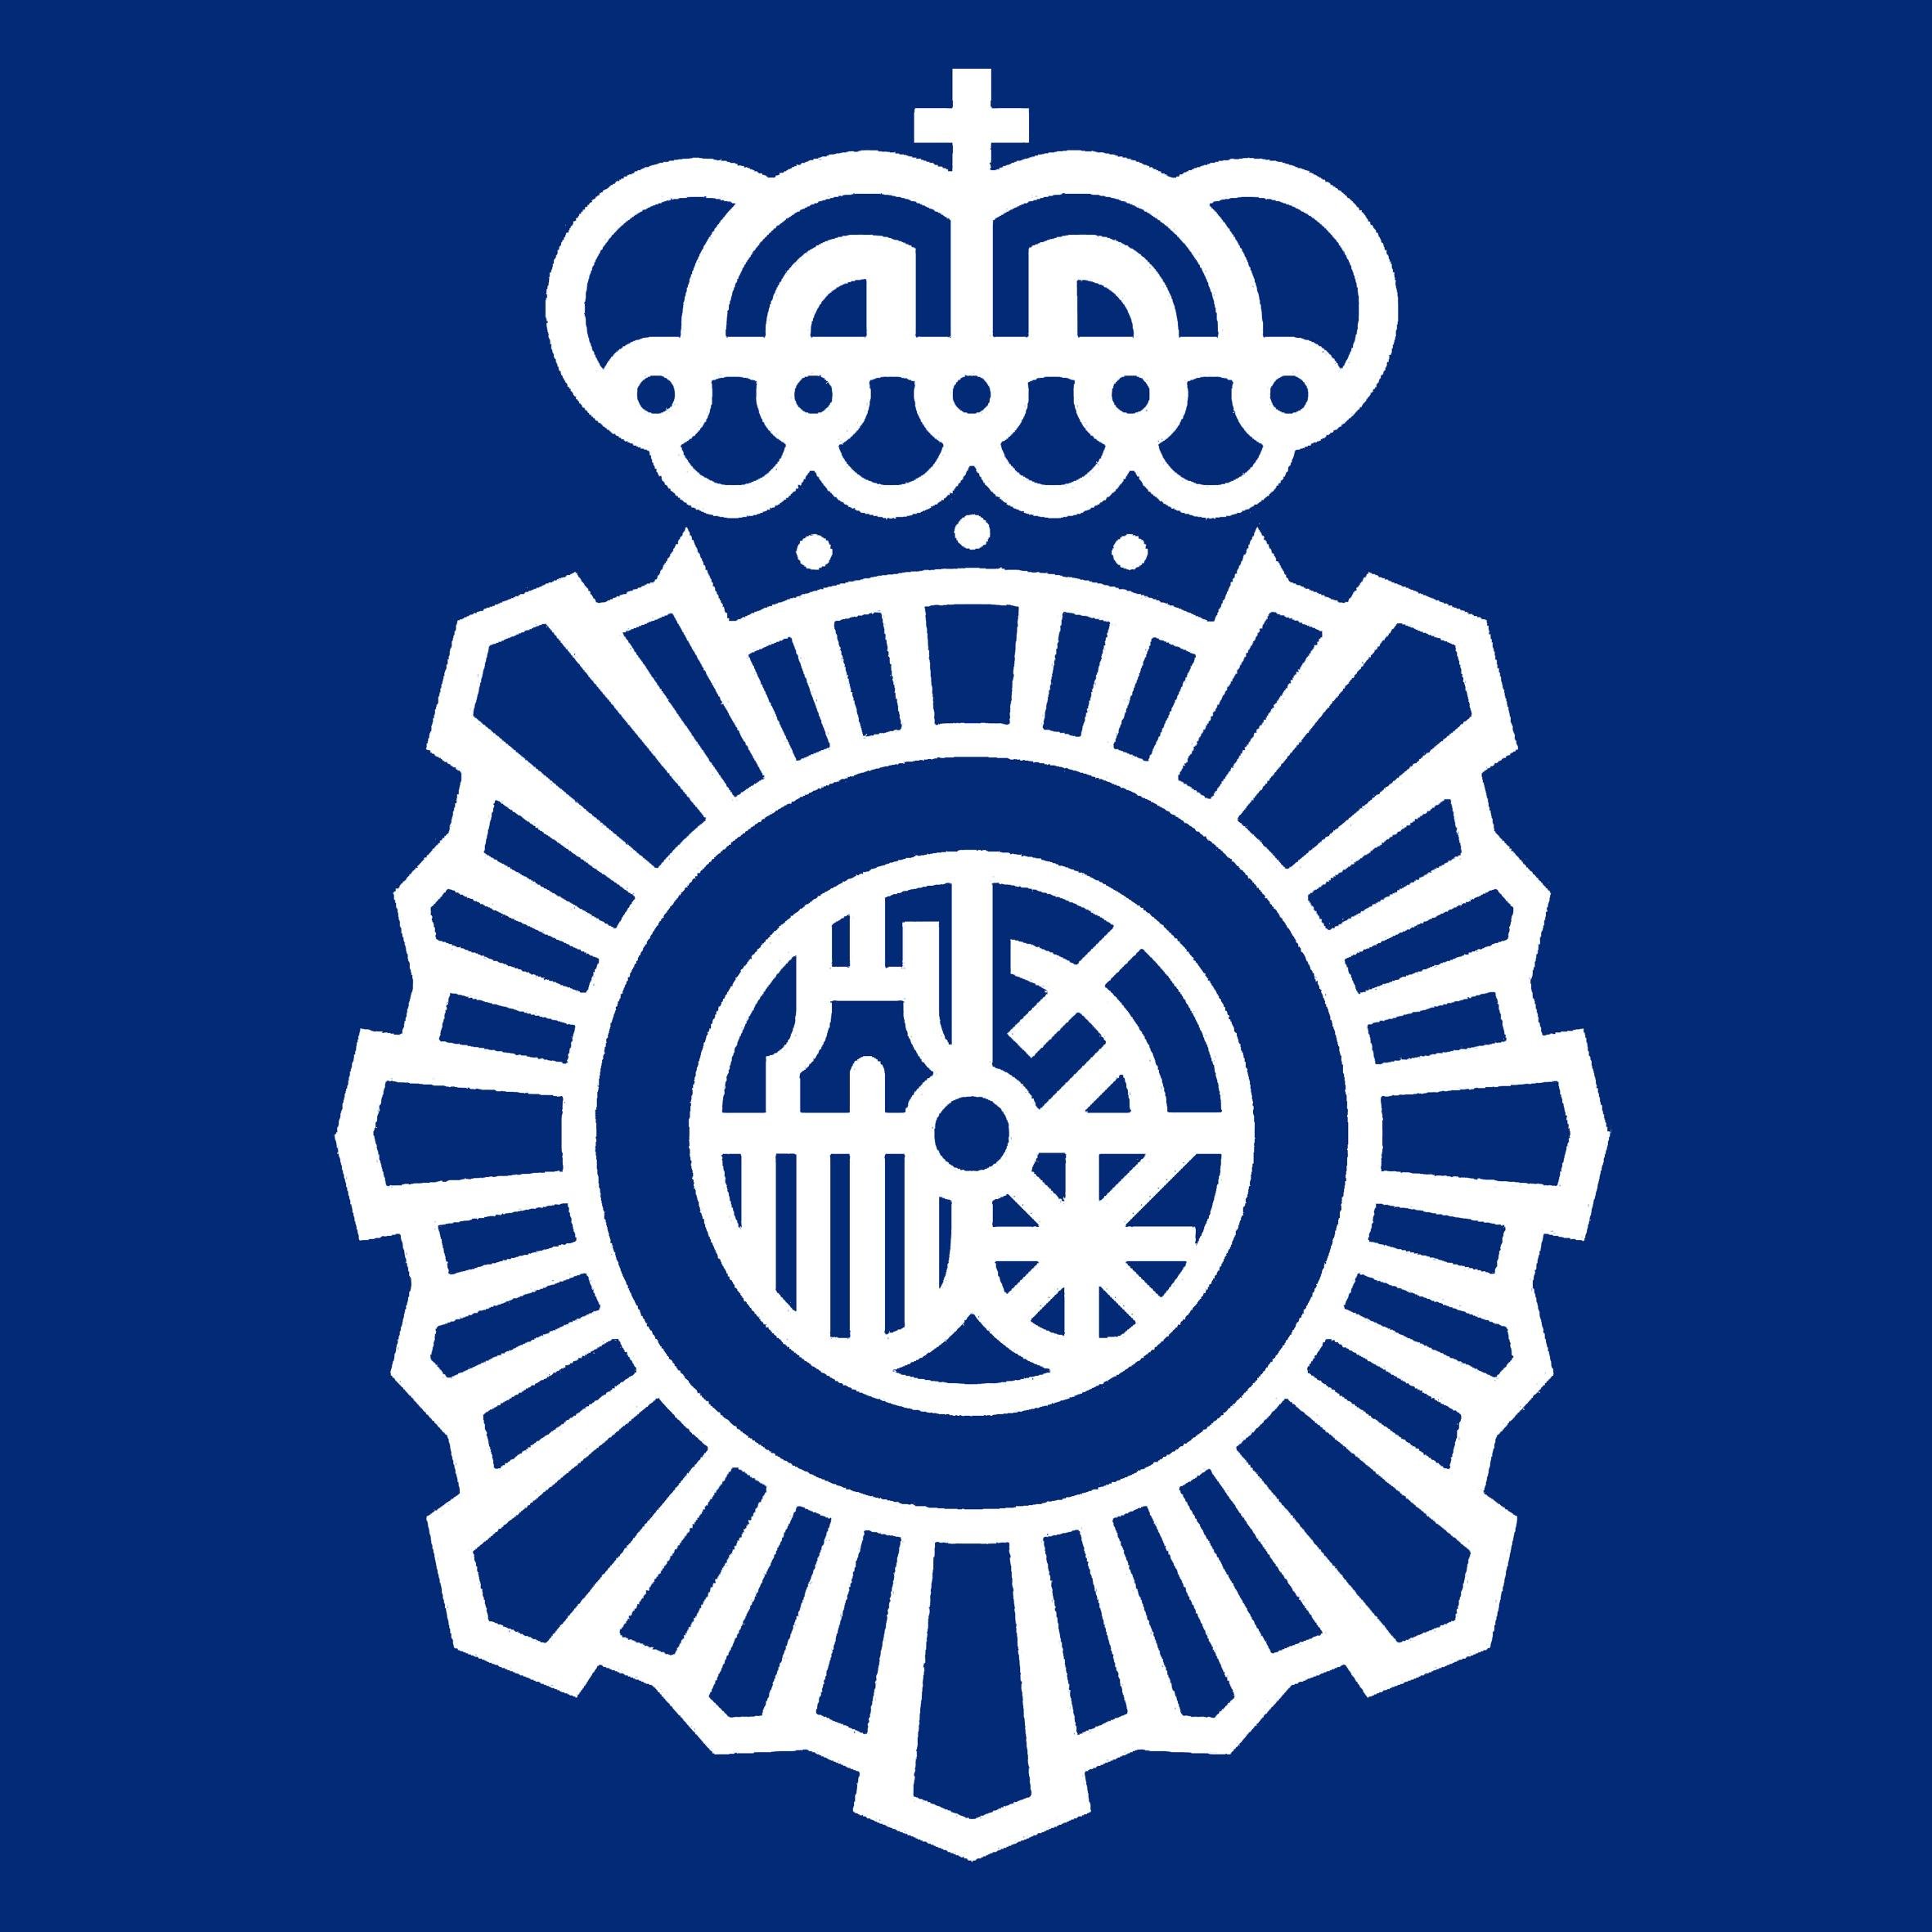 Este perfil pertenece a la Policía Nacional española. Puedes seguir nuestras noticias, consejos e información en http://t.co/q8sOTxeb4W